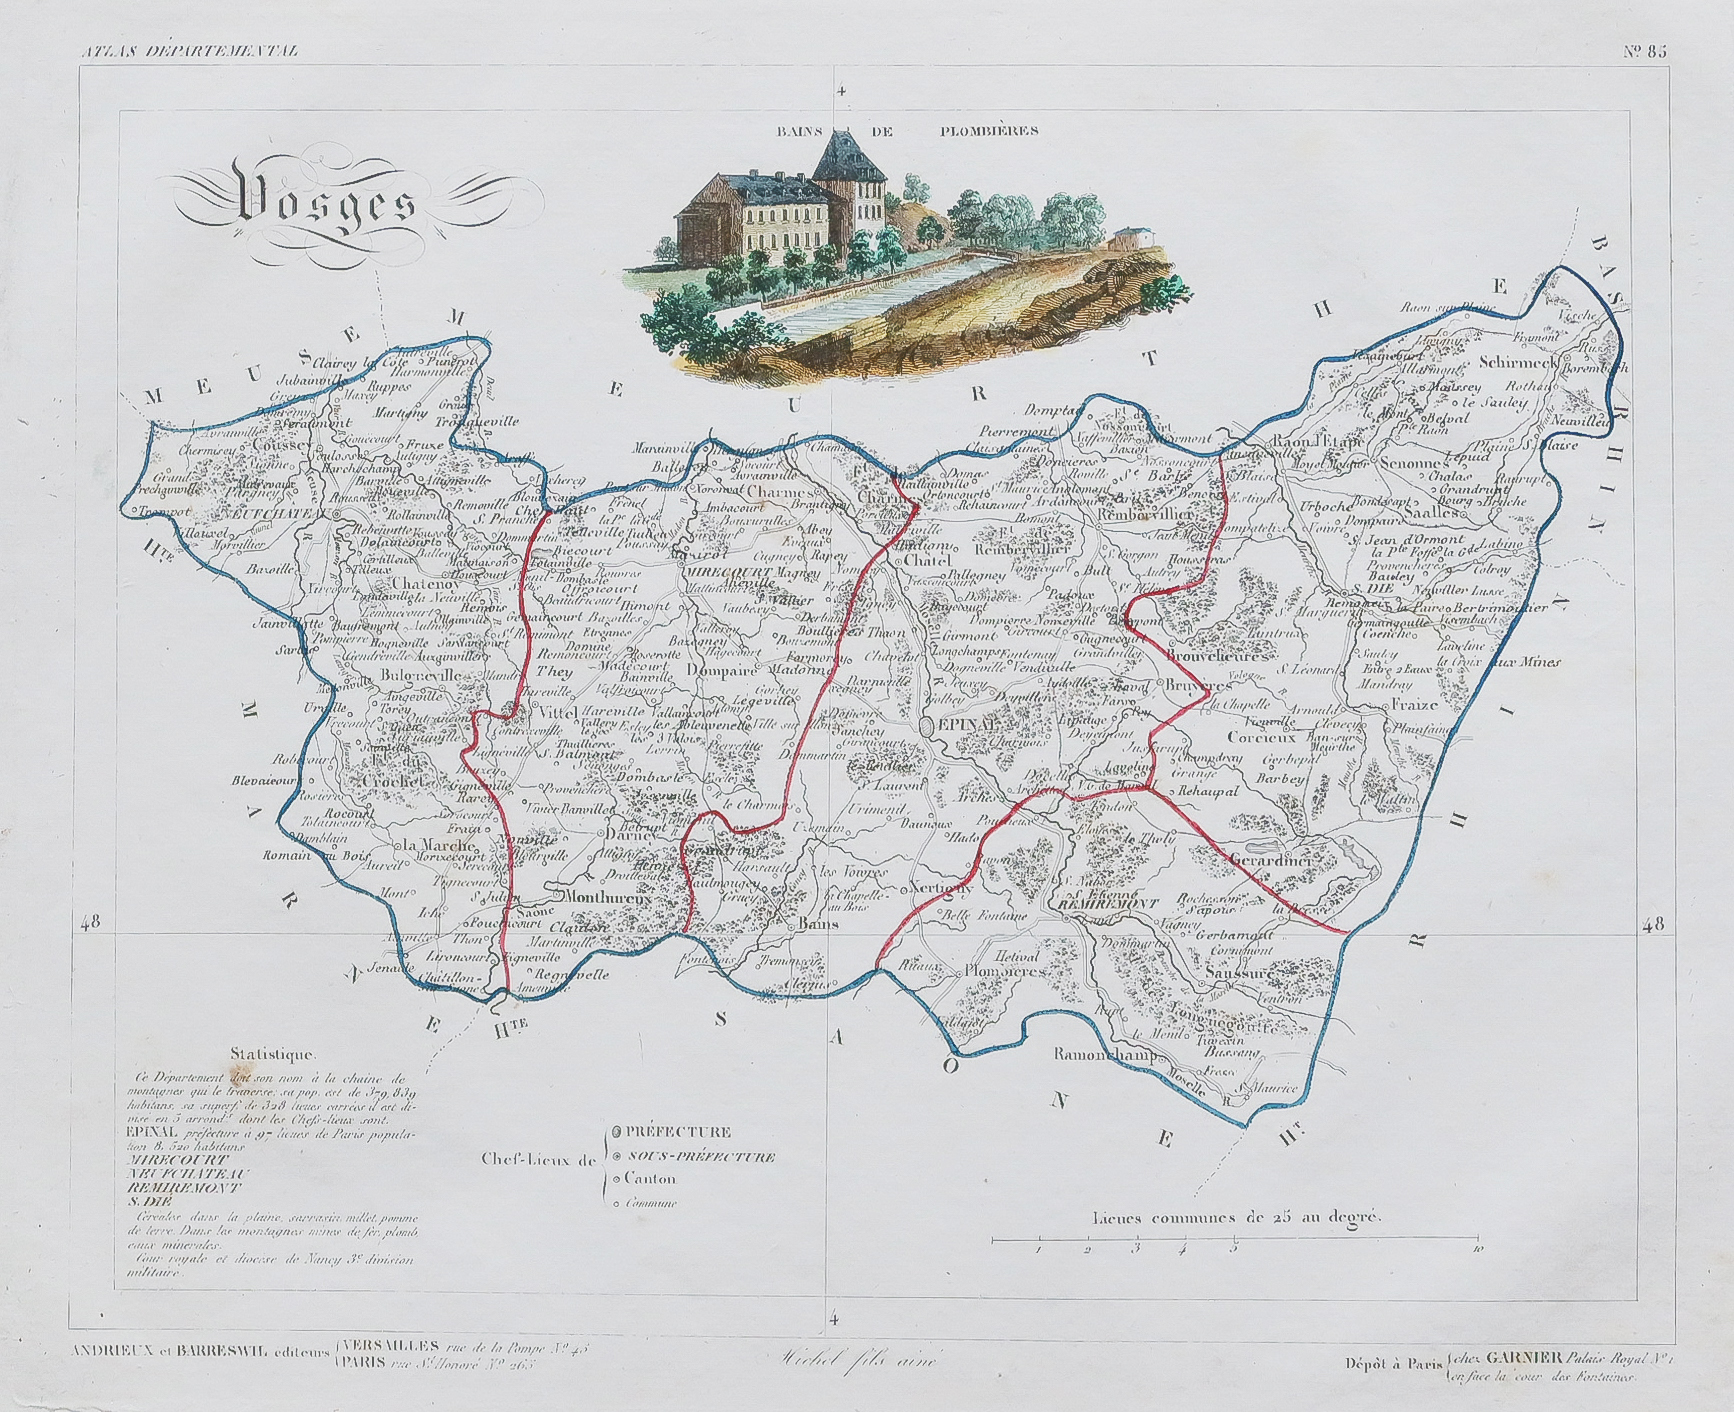 dép des VOSGES Carte géographique couleur illustrée 19°in folio:France 